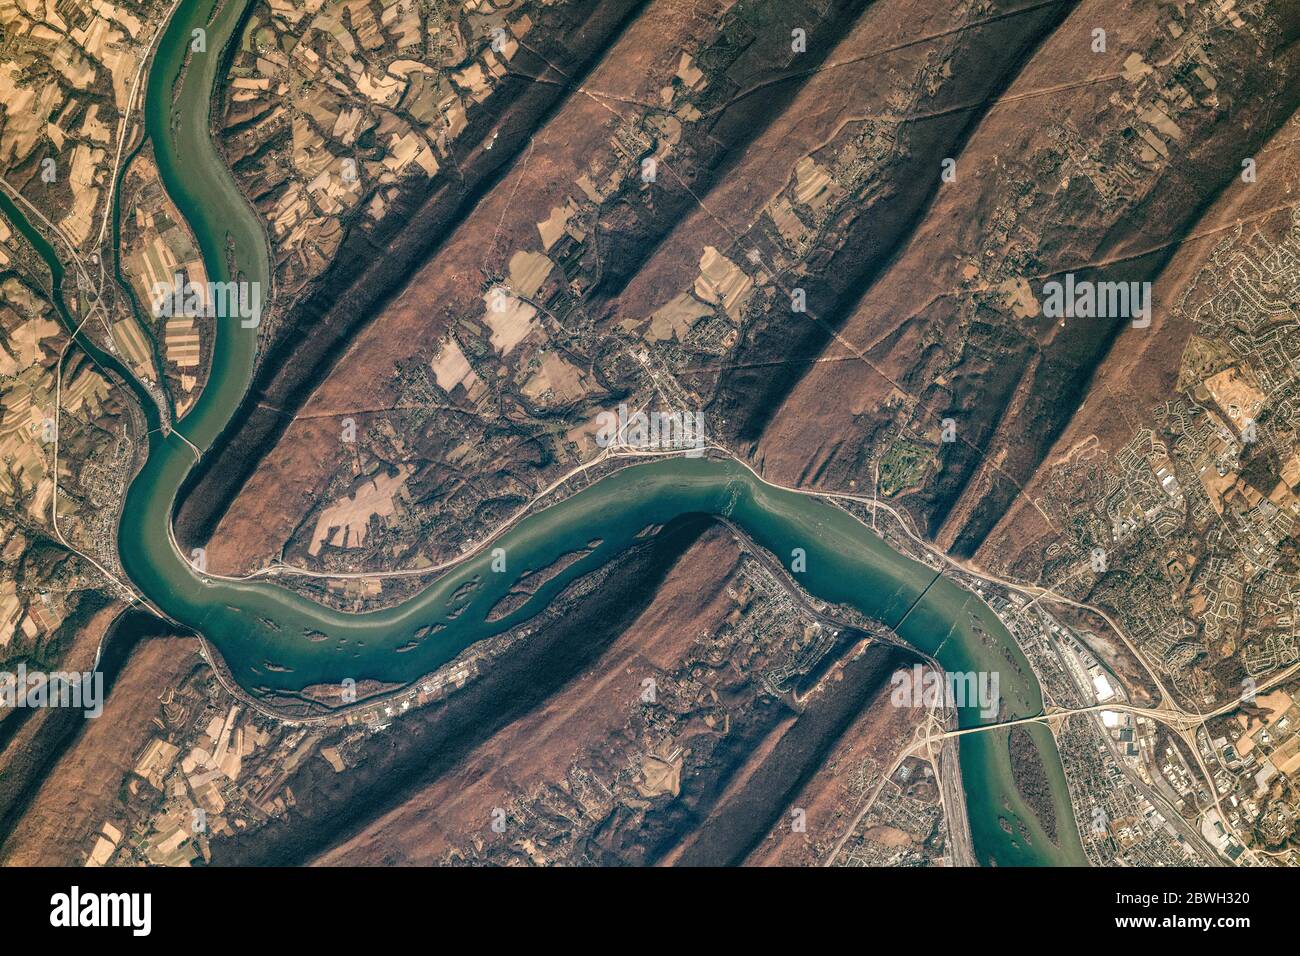 Der Susquehanna River, der sich im Nordosten und im mittleren Atlantik der USA befindet, mündet in die Chesapeake Bay. Stockfoto